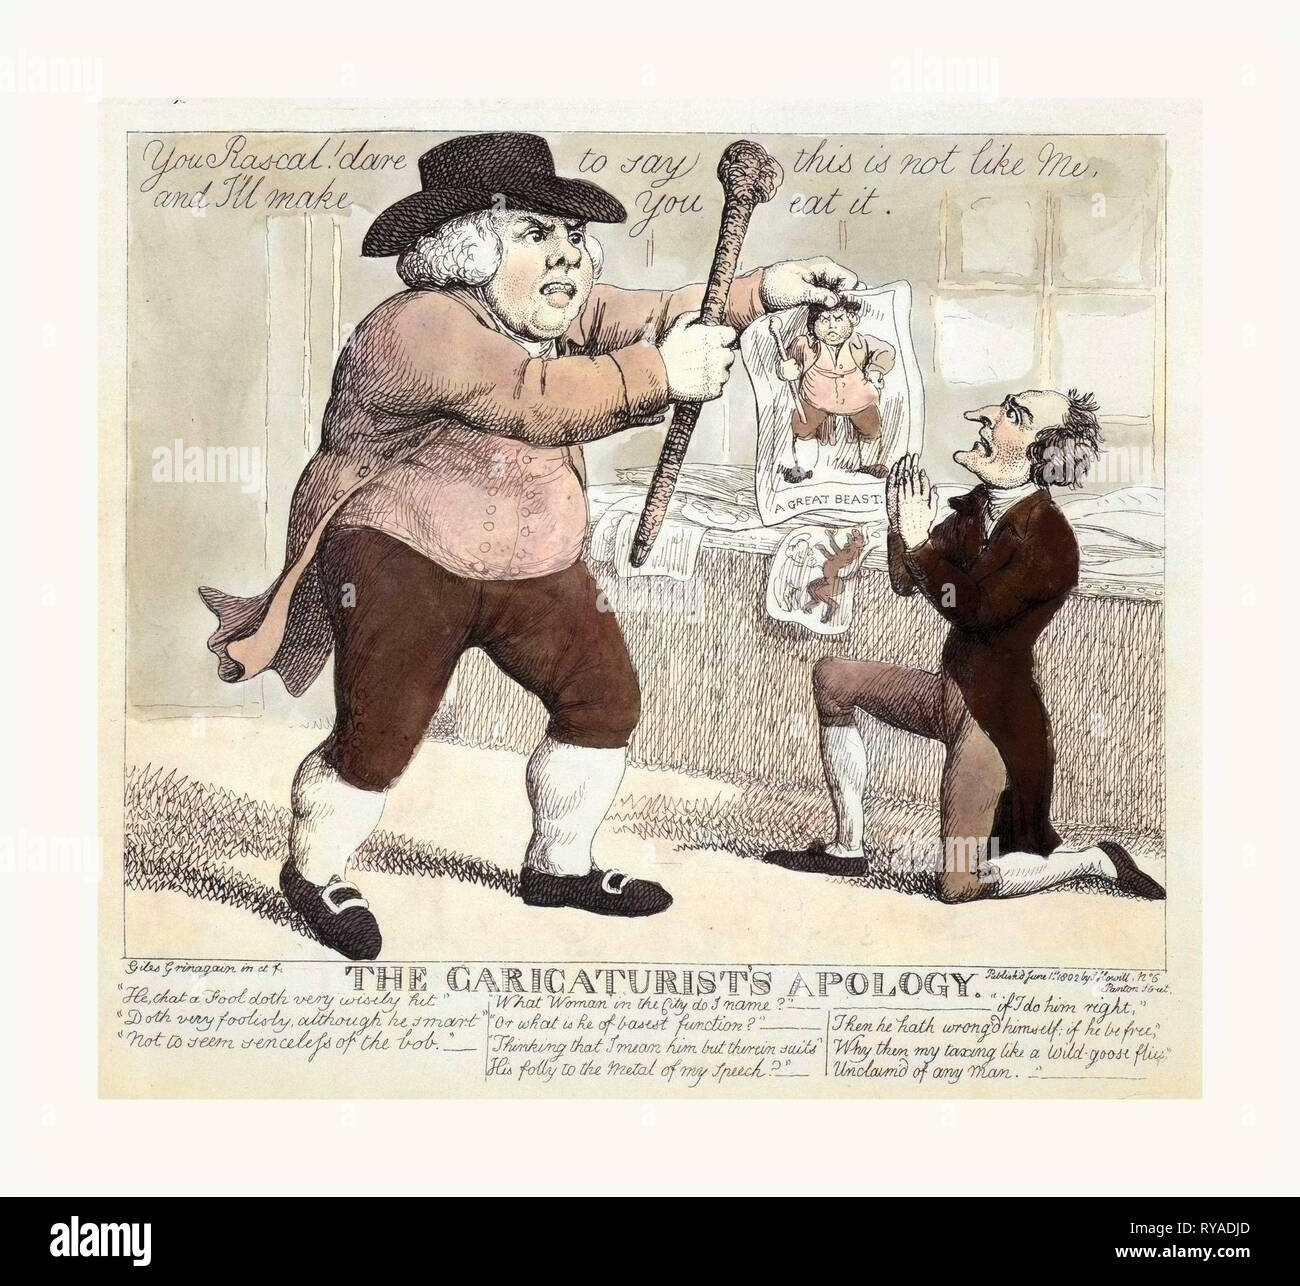 El caricaturista de la disculpa, Grinagain, Giles, Pseud., Artista, Londres, 1802, un gran hombre con un club y la caricatura de sí mismo, amenaza a un caricaturista de rodillas Foto de stock